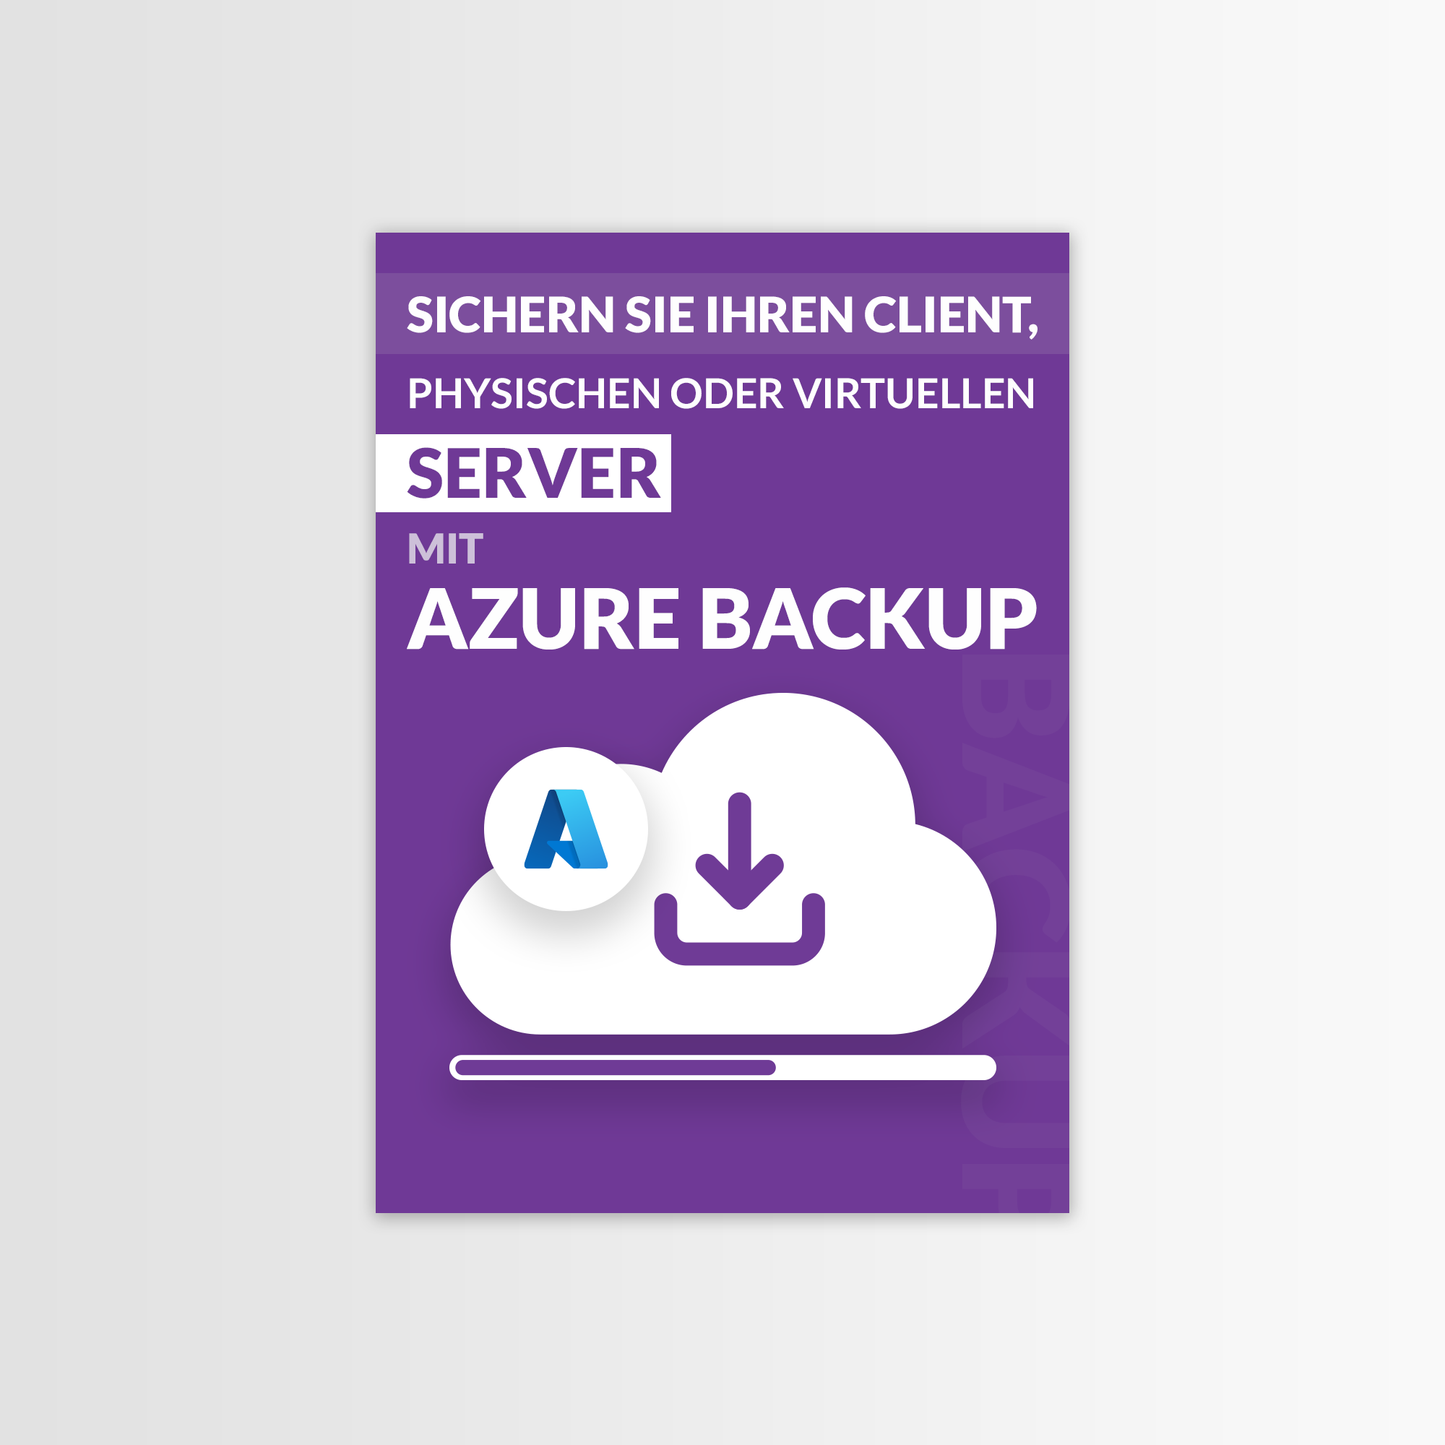 
                  
                    Sichern Sie Ihren Client, physischen oder virtuellen Server mit Azure Backup
                  
                